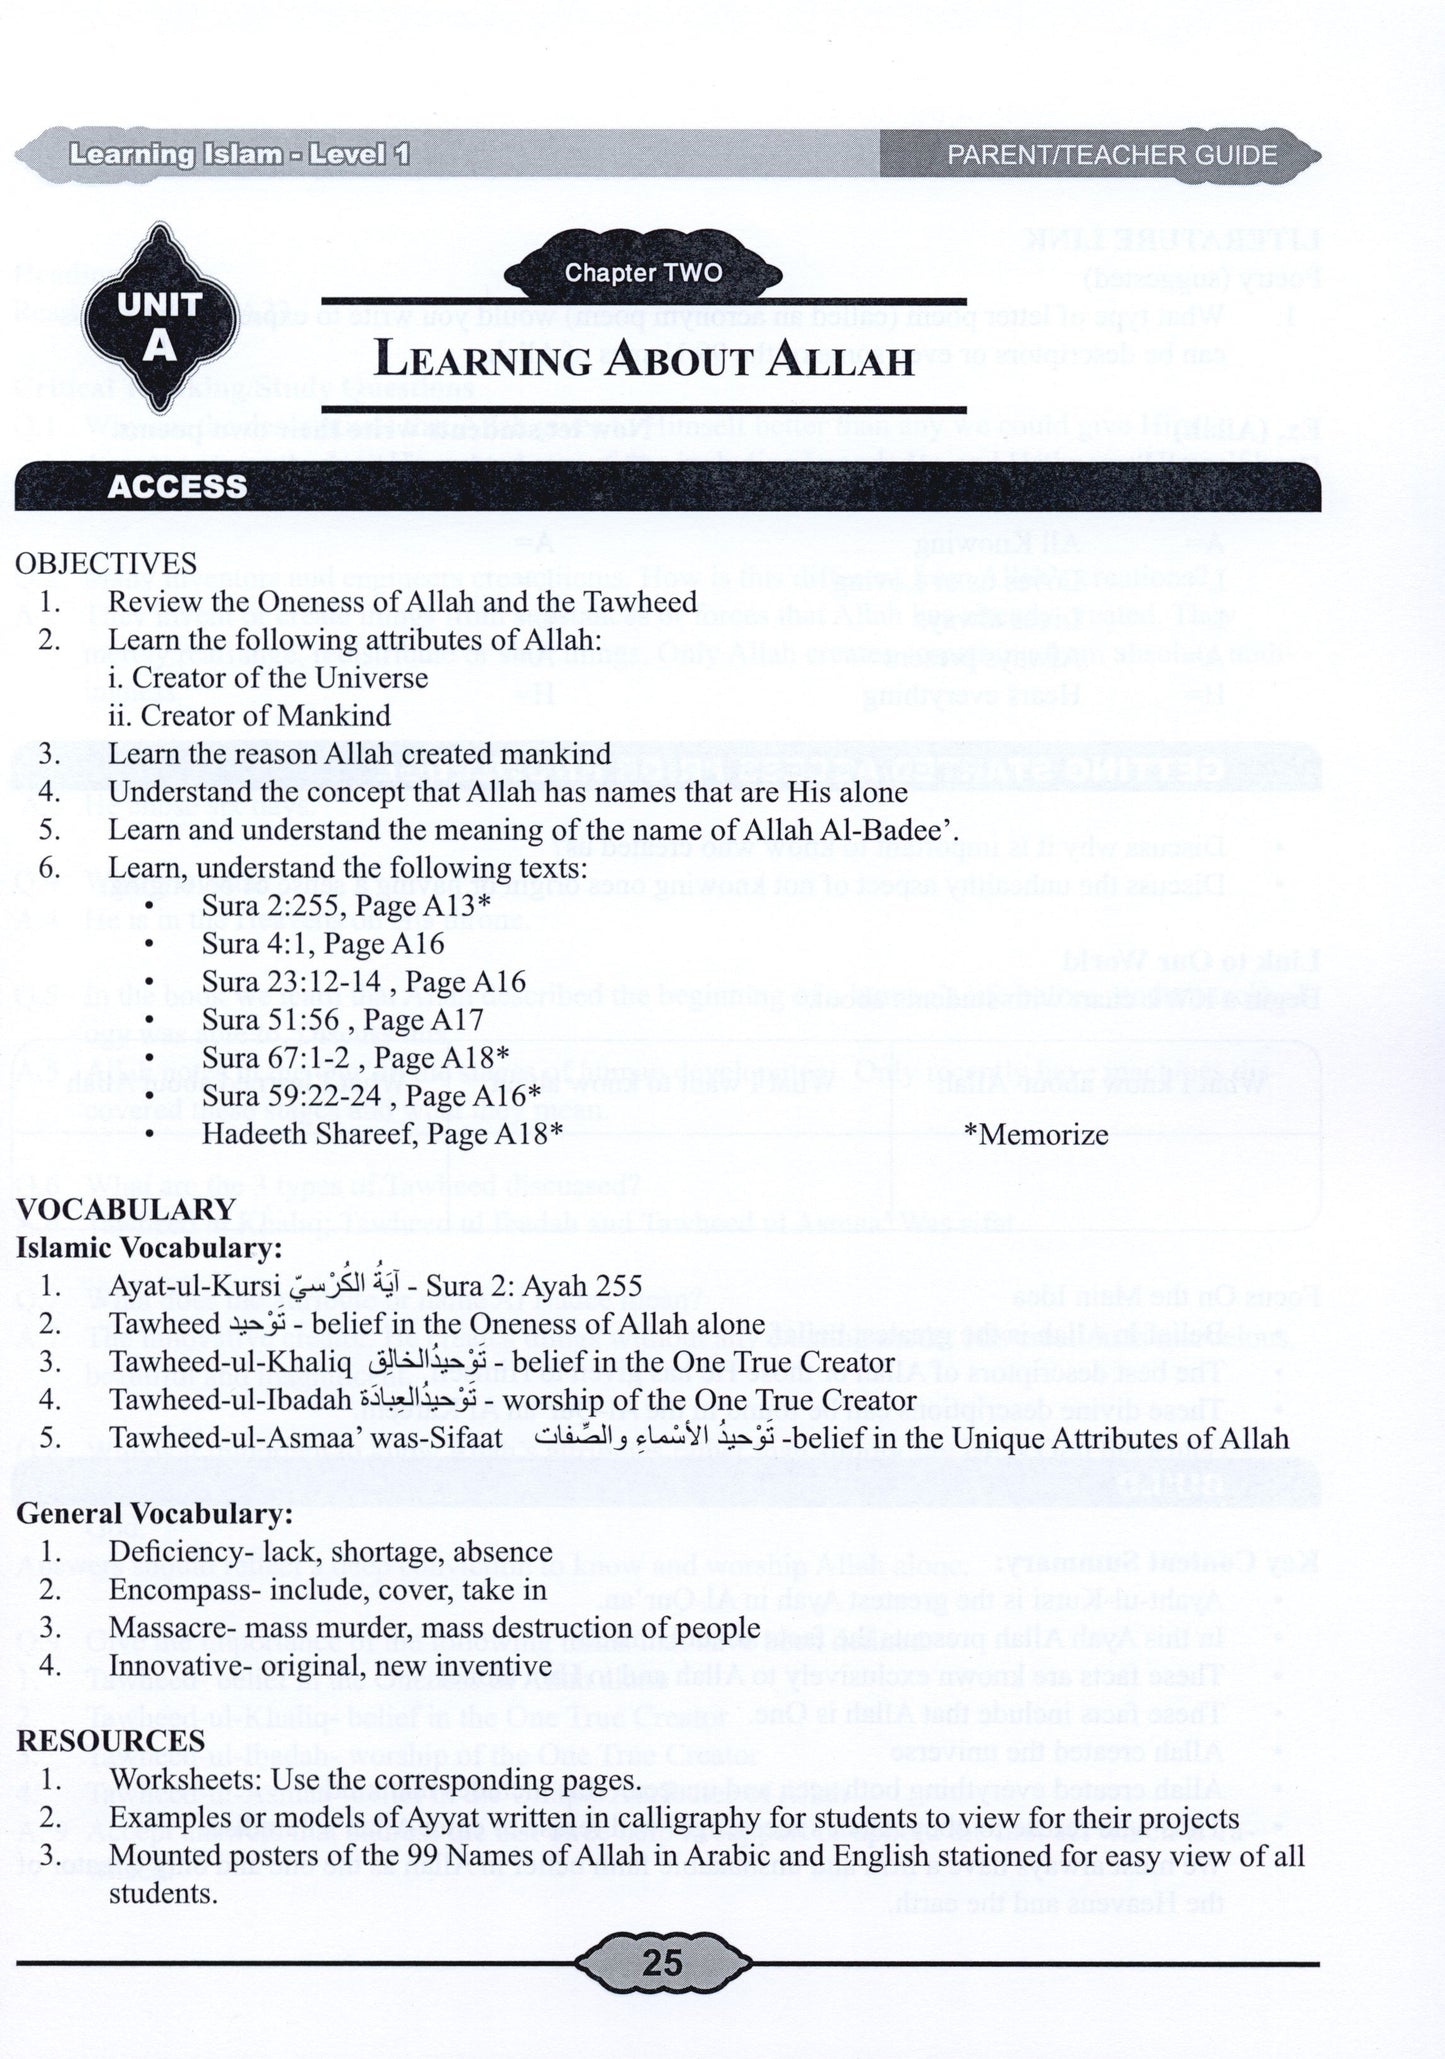 Learning Islam Parent/Teacher Guide Level 1 (Grade 6)